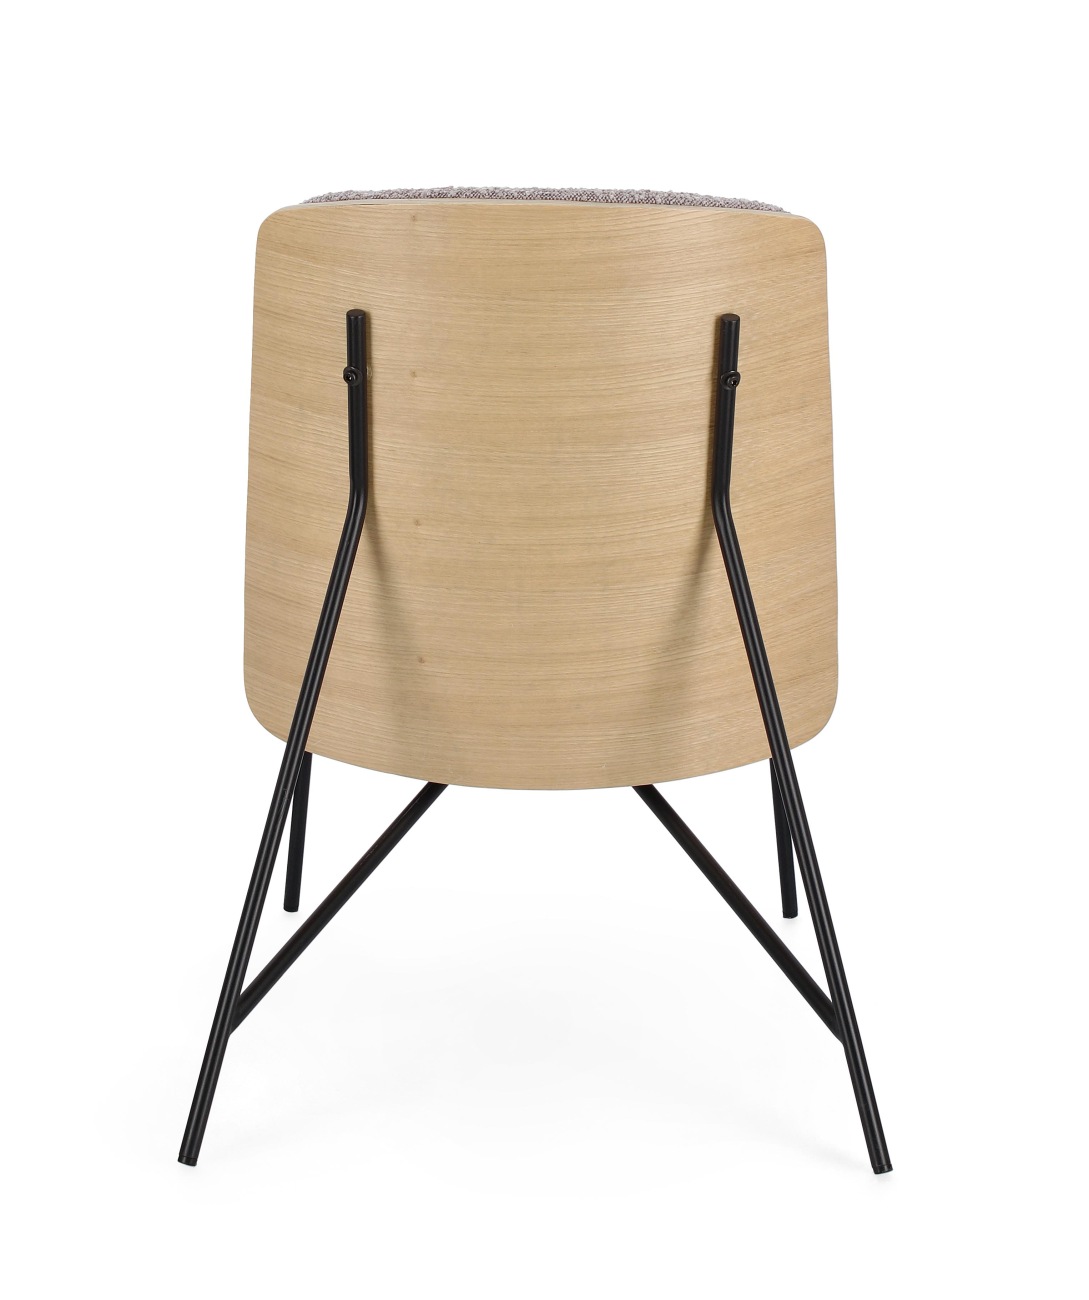 Der Sessel Emmerson überzeugt mit seinem modernen Stil. Gefertigt wurde er aus Boucle-Stoff, welcher einen braunen Farbton besitzt. Das Gestell ist aus Metall und hat eine schwarze Farbe. Der Sessel besitzt eine Sitzhöhe von 46 cm.